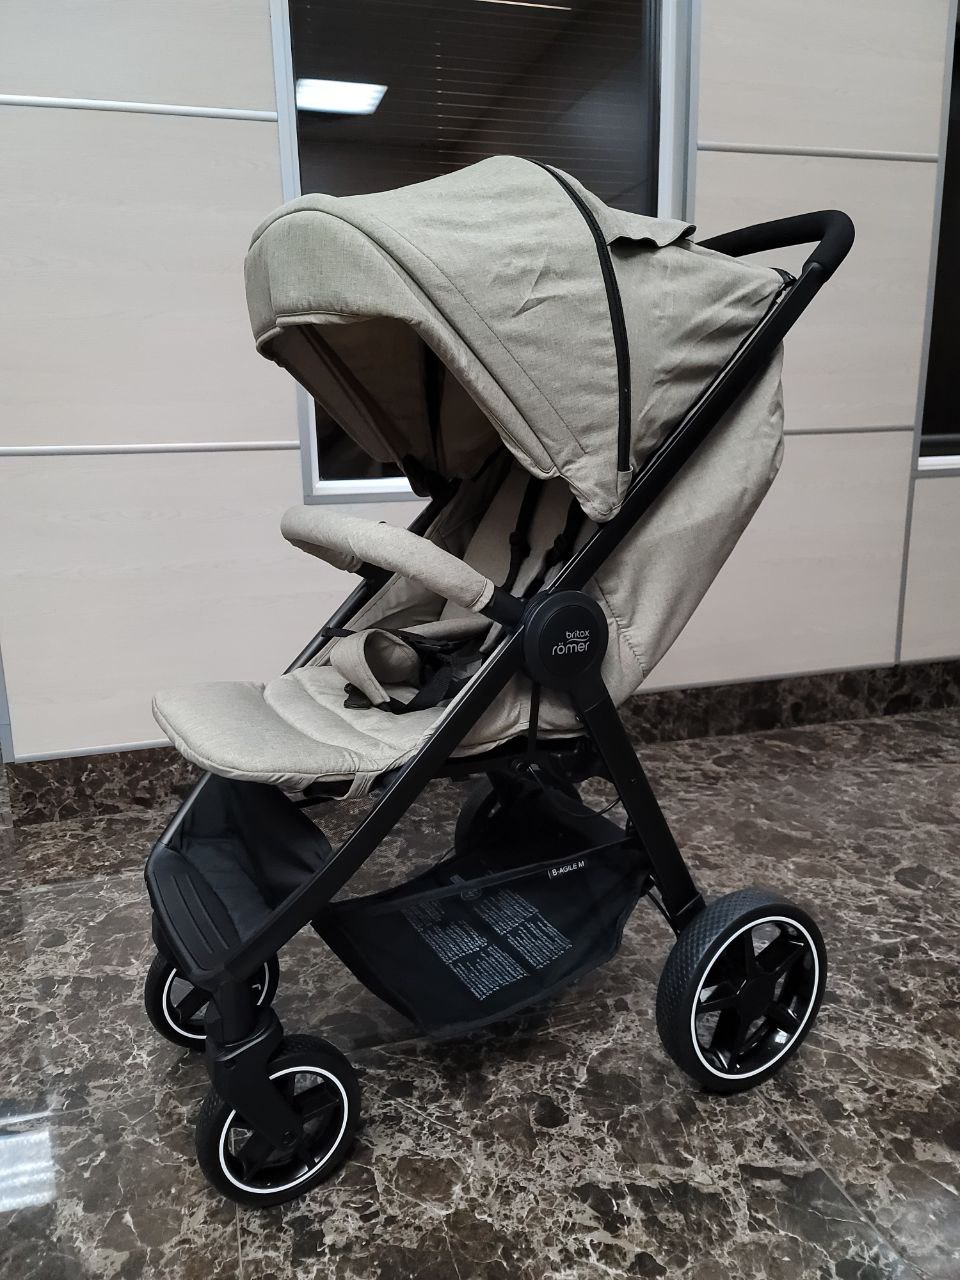 Продажа детской коляски Britax B-Agile M, цвет бежевый, состояние: уценка. Тест-драйв и доставка по России.